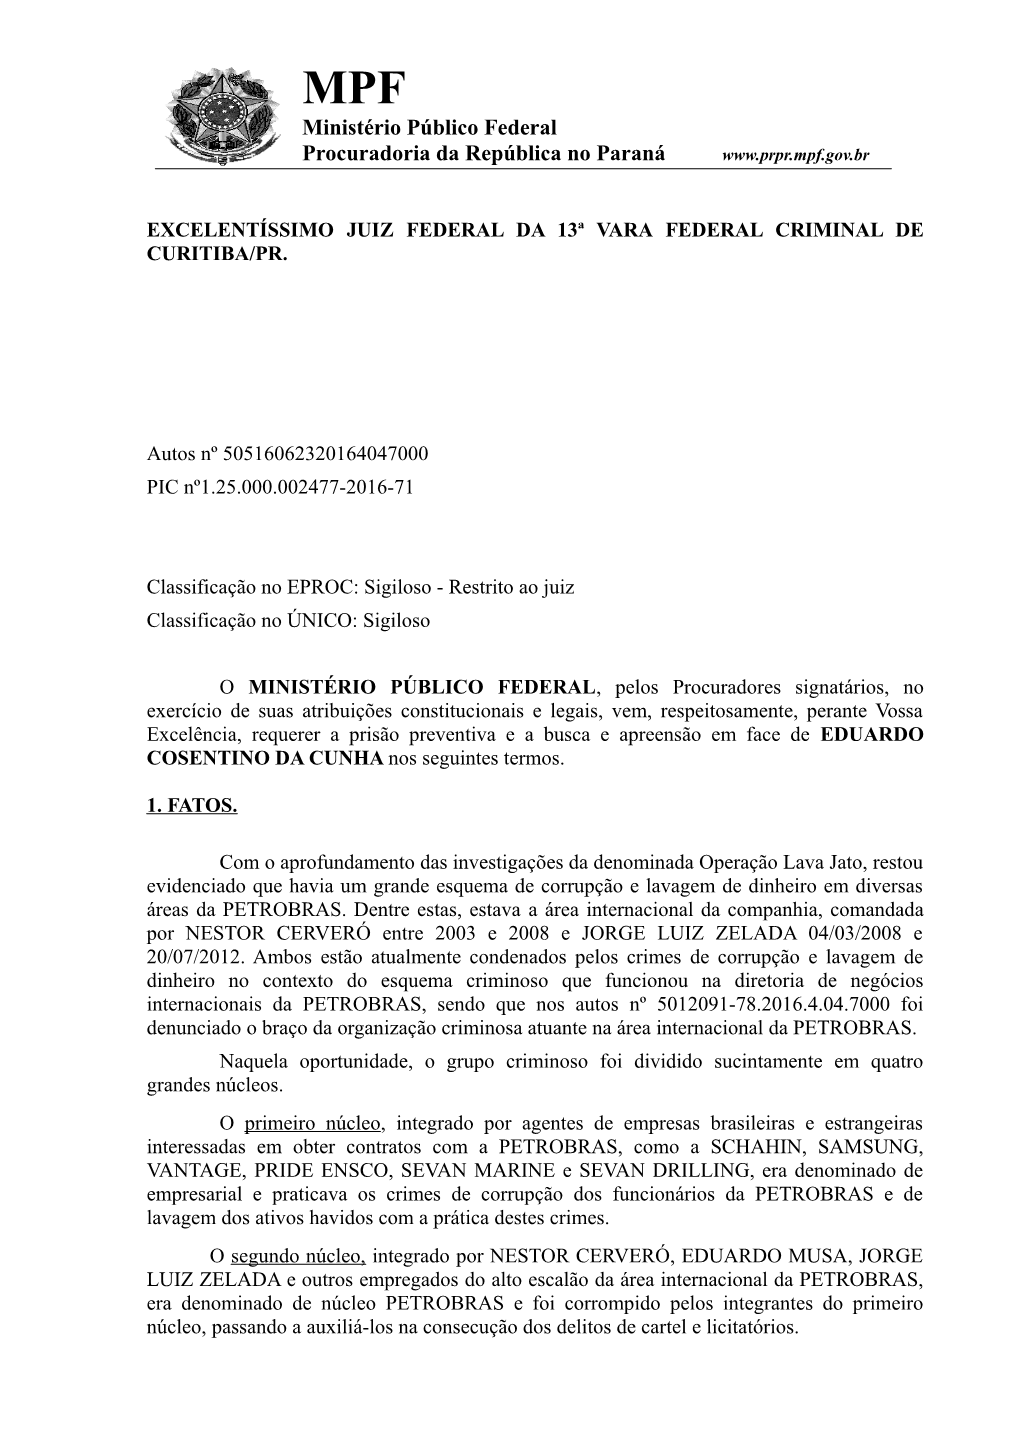 MPF Ministério Público Federal Procuradoria Da República No Paraná